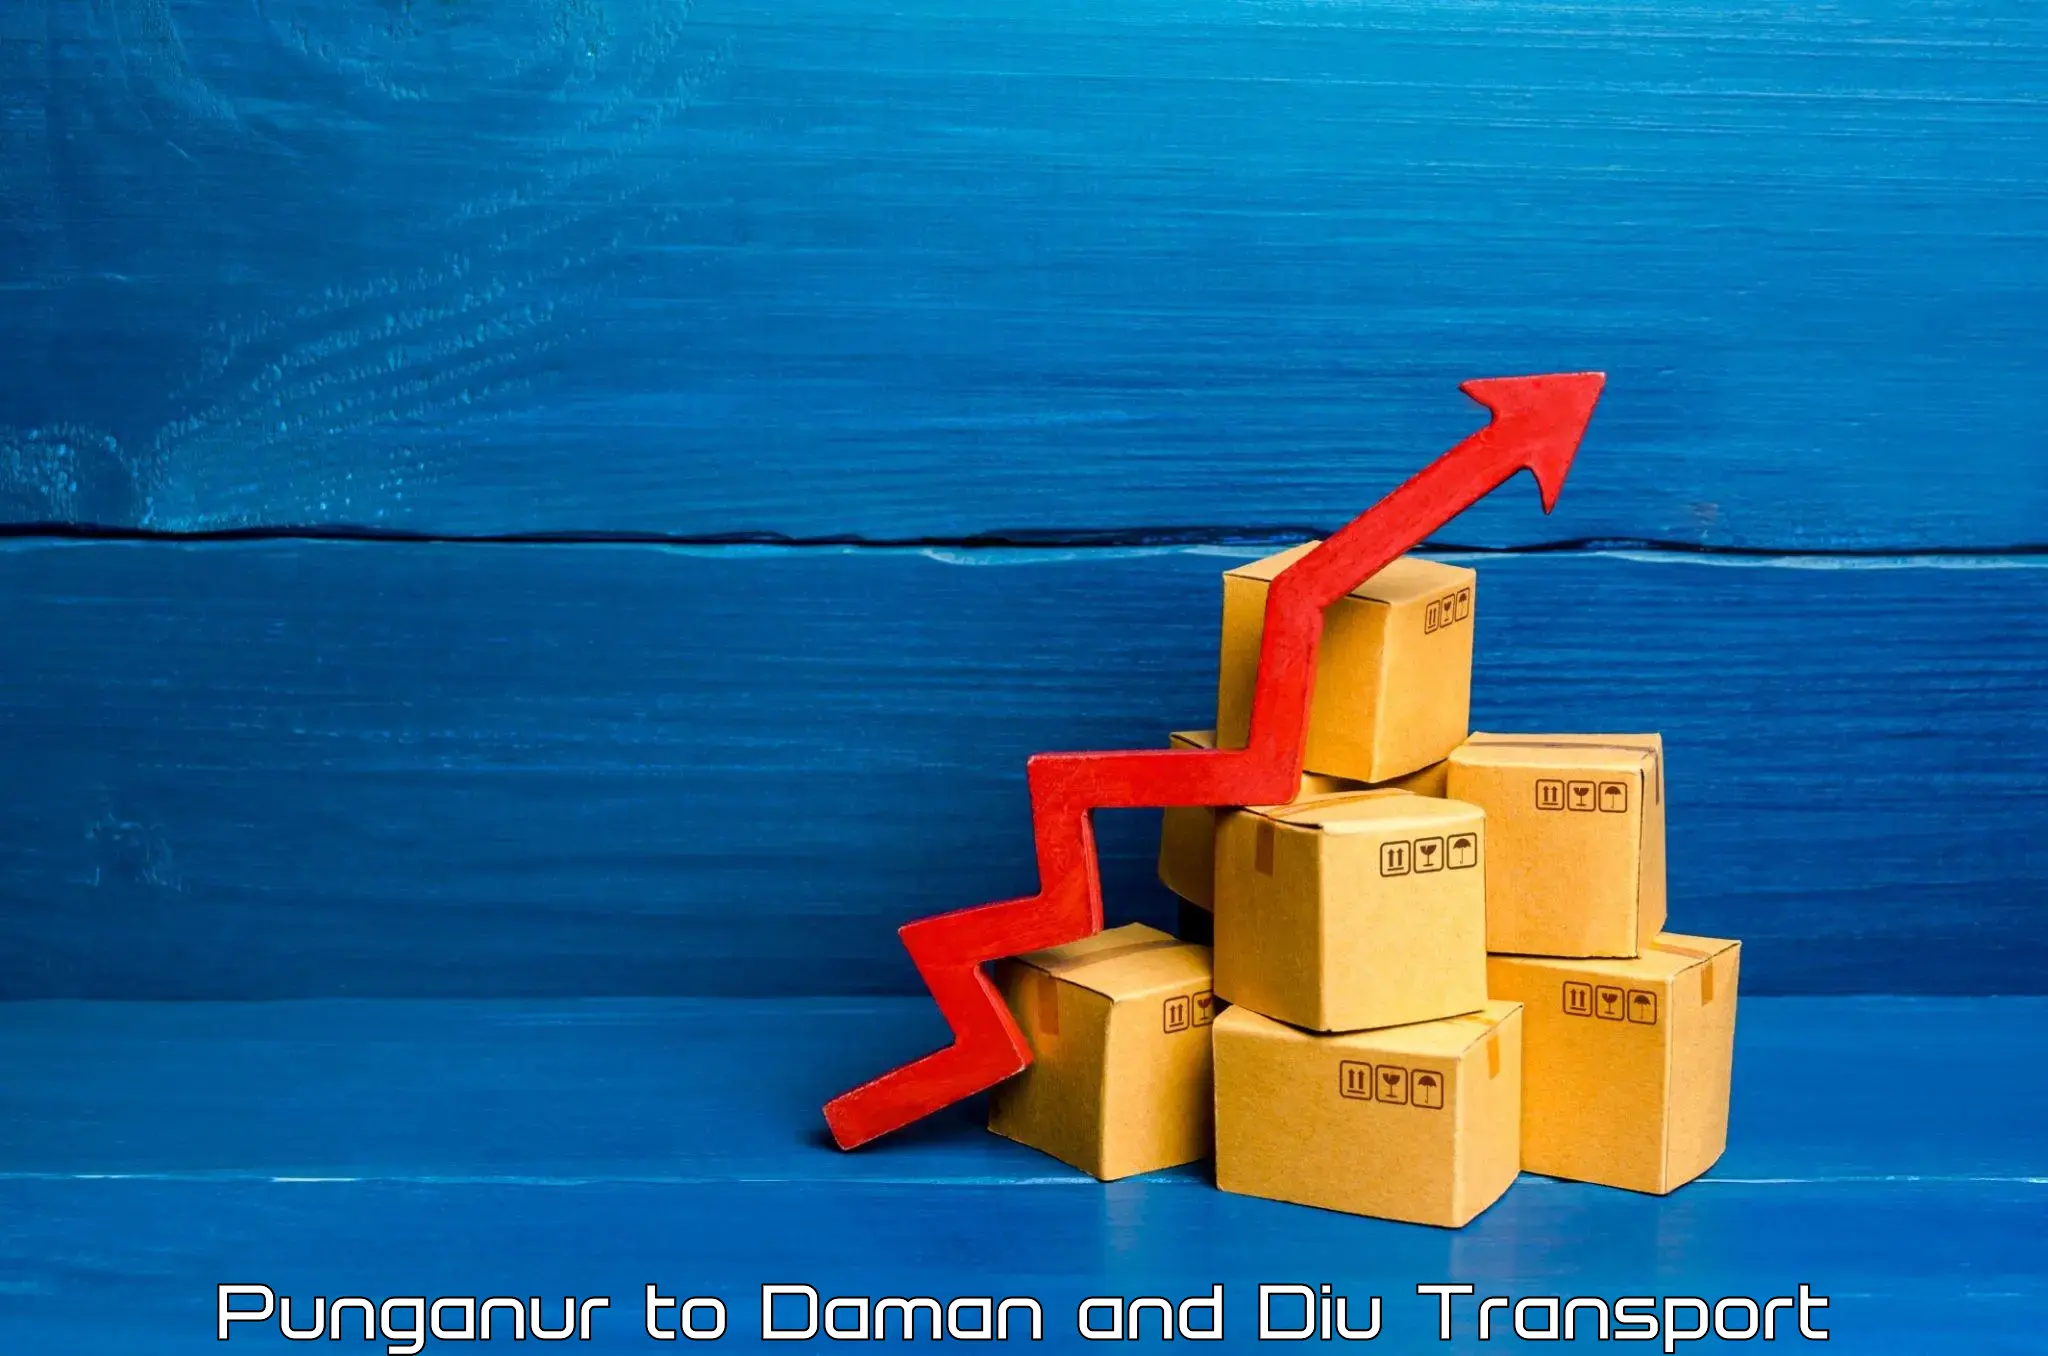 Daily transport service Punganur to Daman and Diu